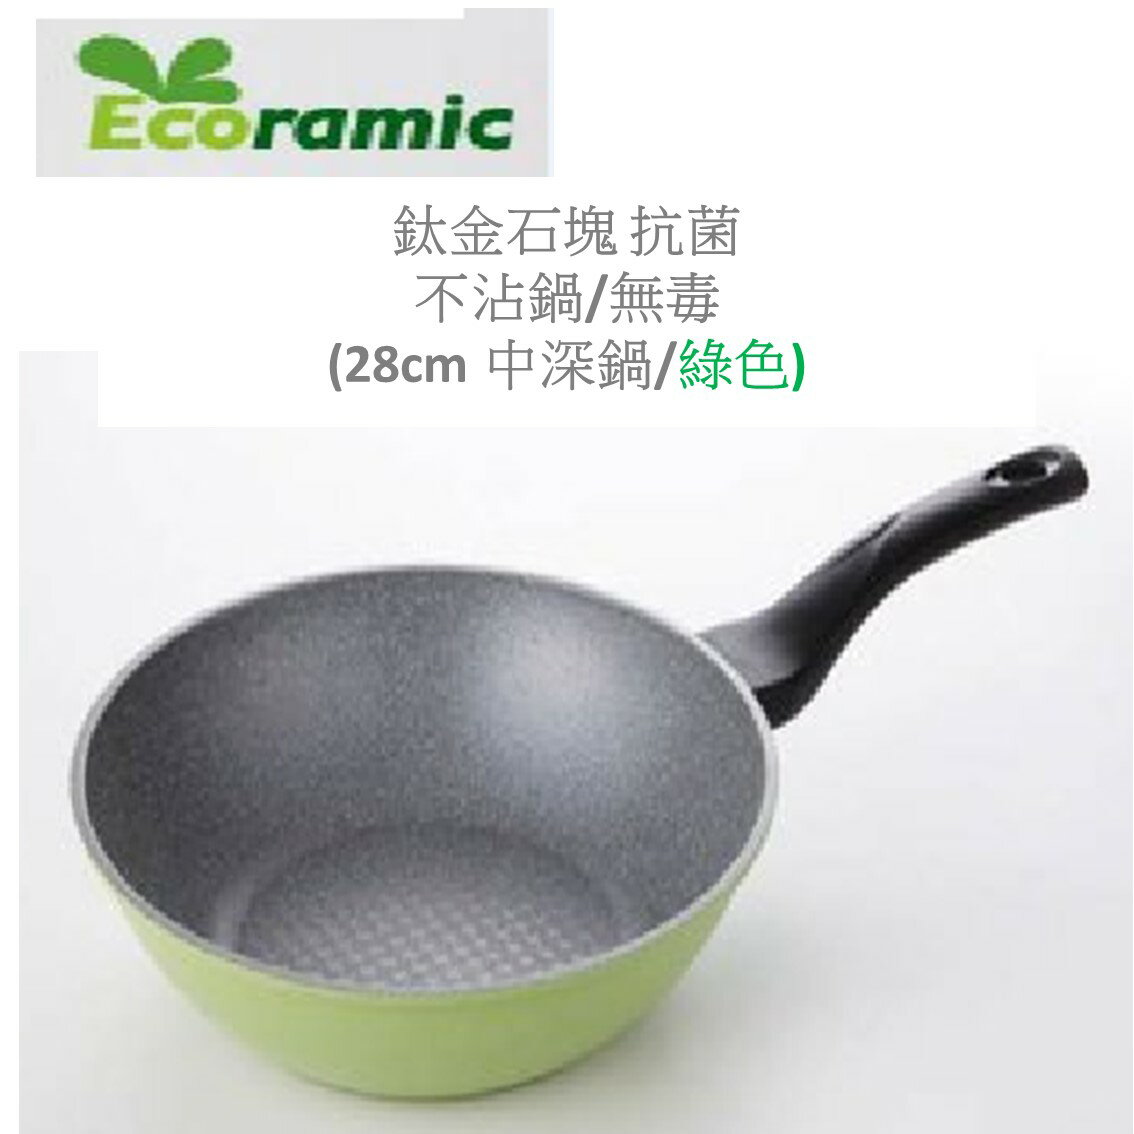 韓國Ecoramic鈦晶石頭抗菌不沾鍋 【28cm 綠色中深鍋】